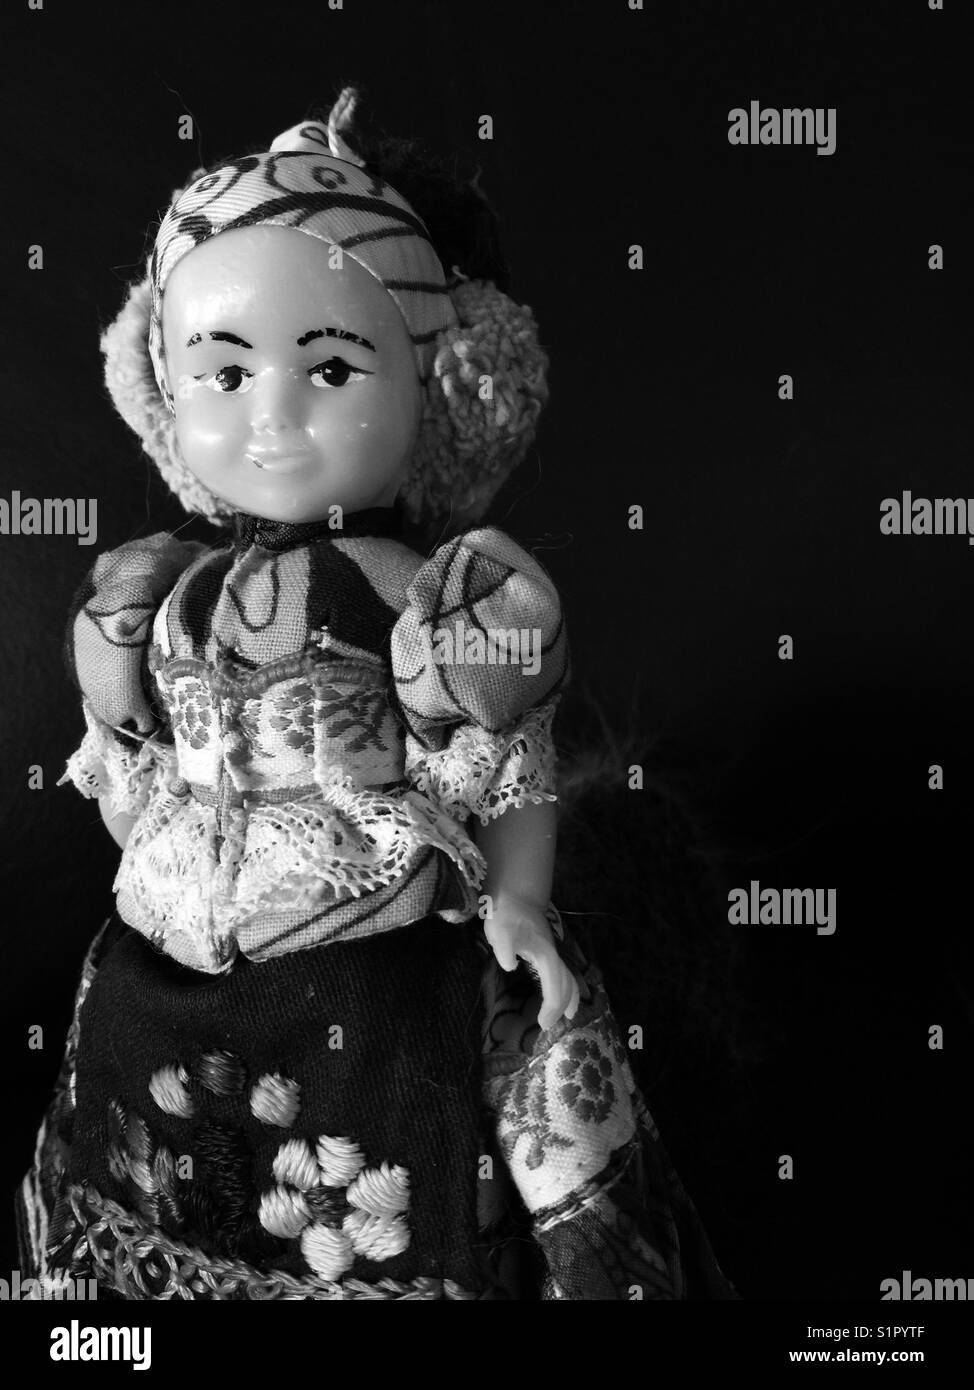 En plastique noir et blanc vintage poupée gitane libre Banque D'Images